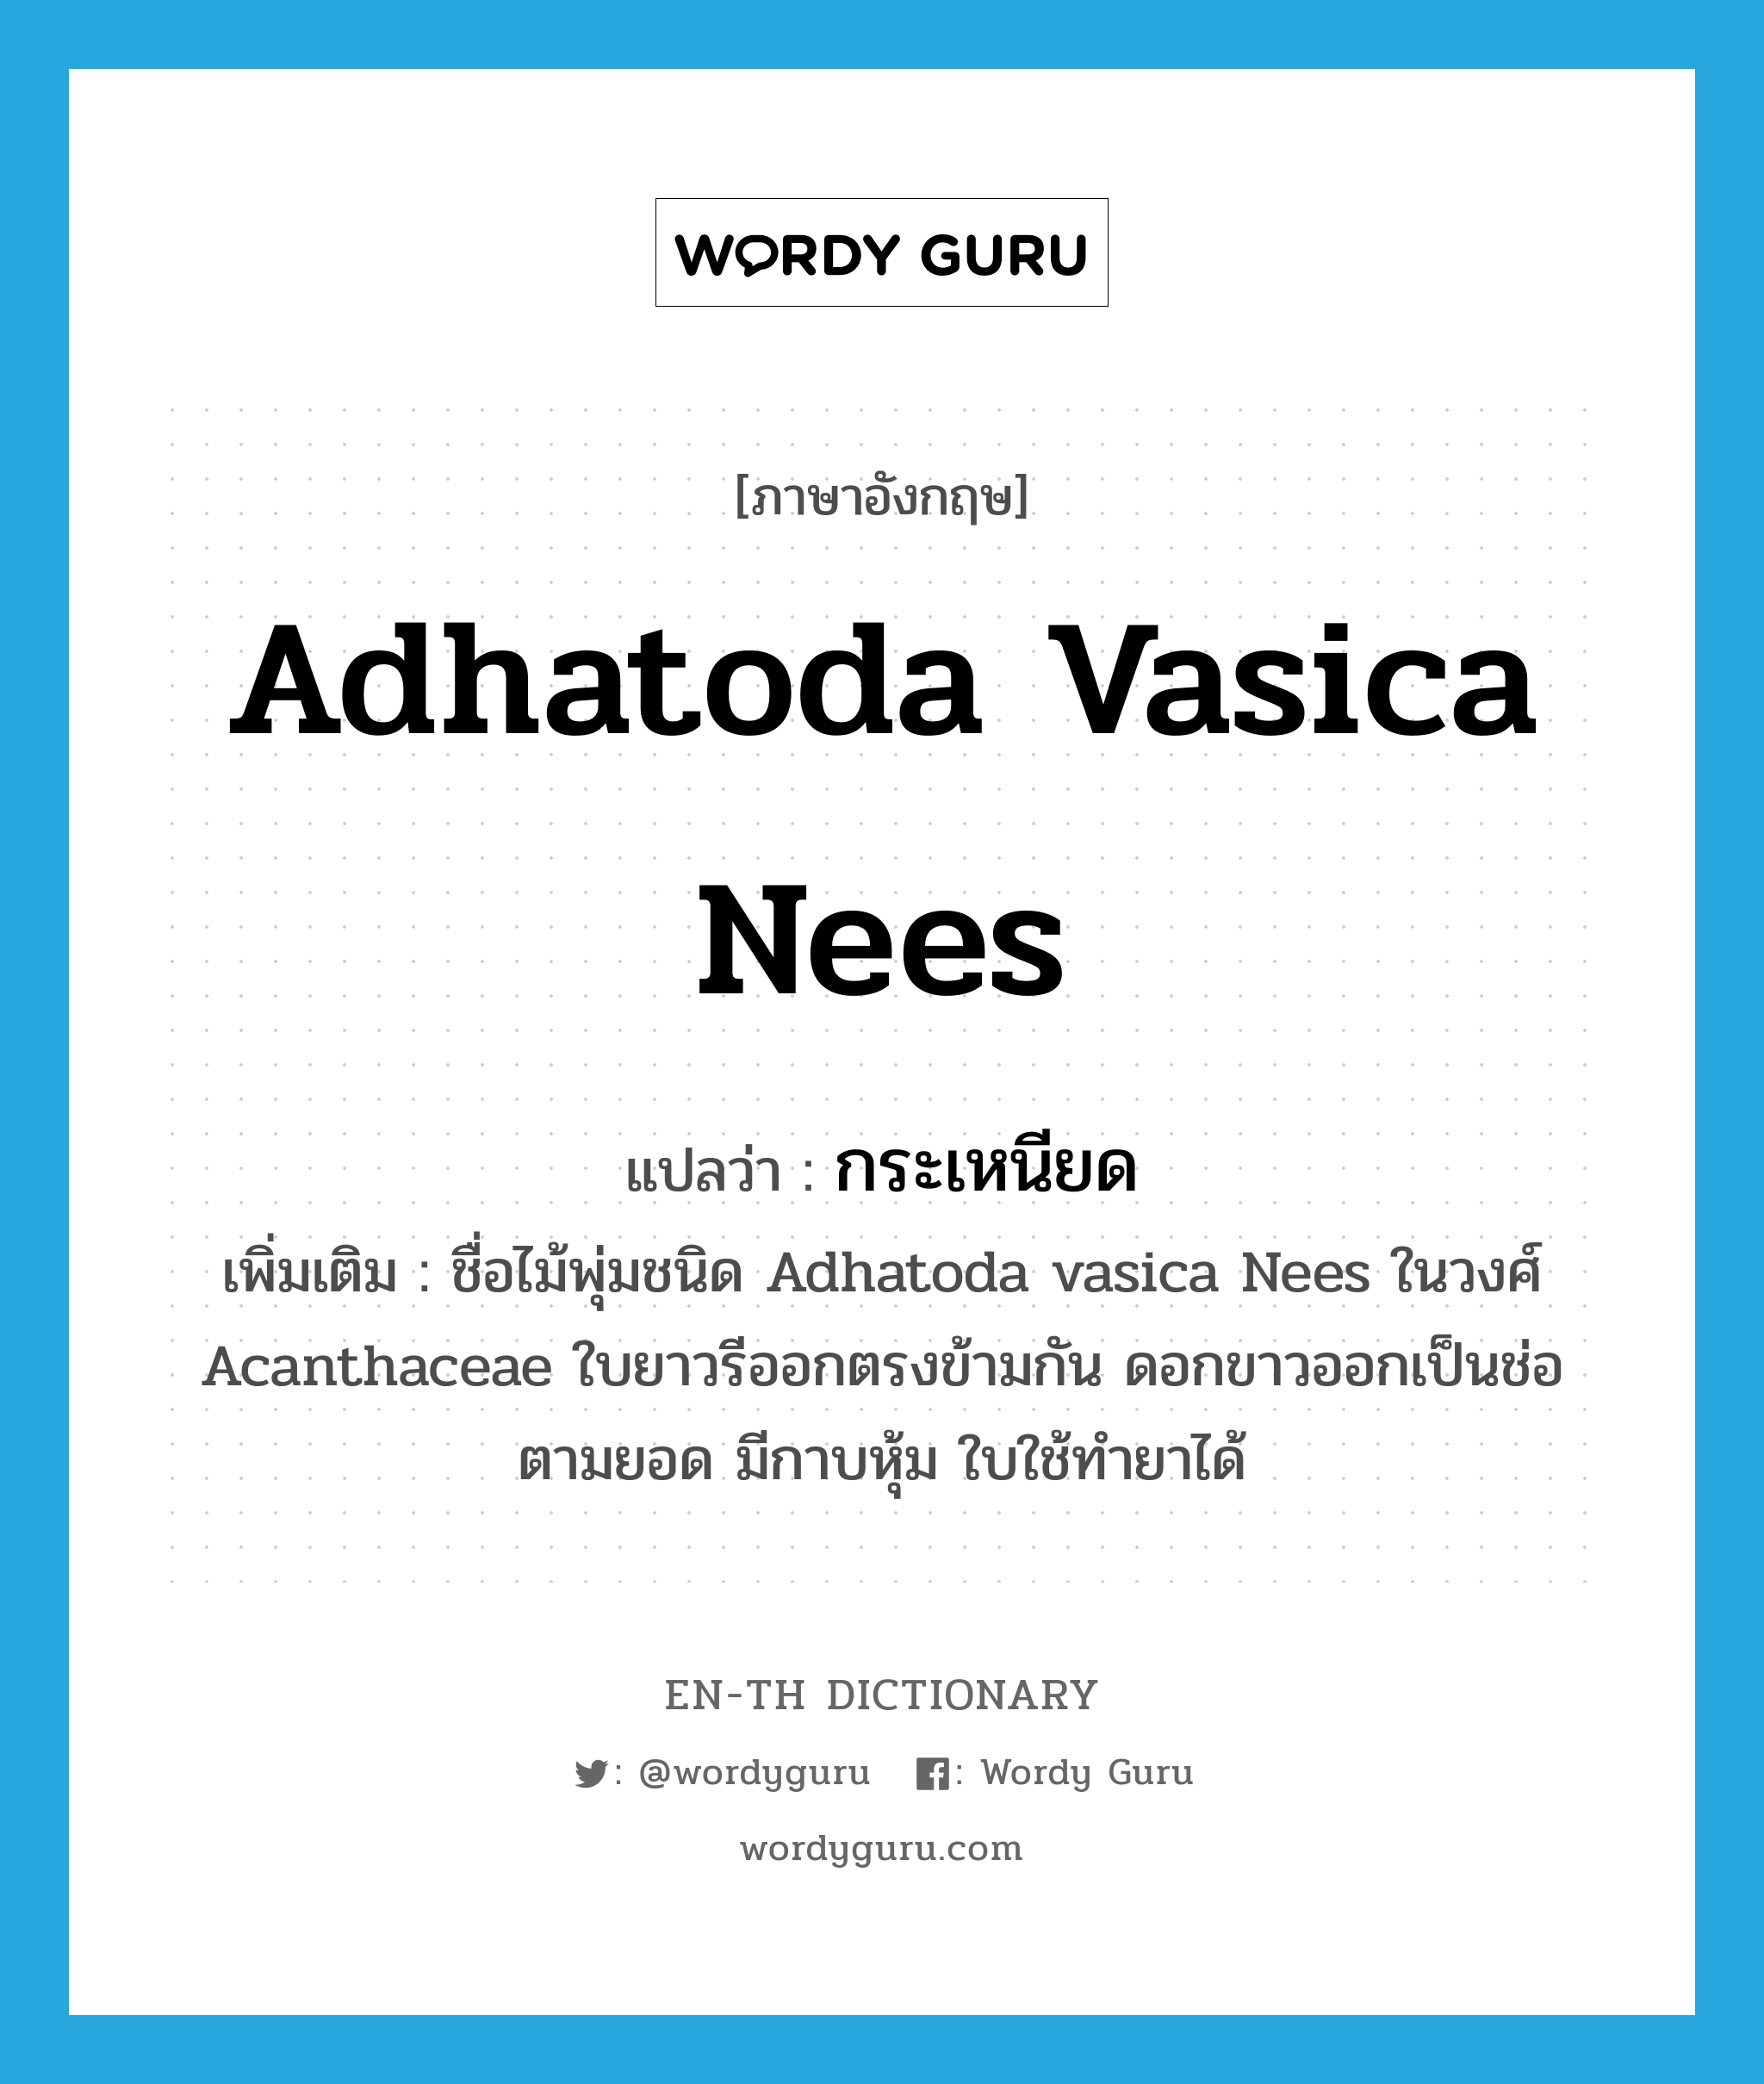 กระเหนียด ภาษาอังกฤษ?, คำศัพท์ภาษาอังกฤษ กระเหนียด แปลว่า Adhatoda vasica Nees ประเภท N เพิ่มเติม ชื่อไม้พุ่มชนิด Adhatoda vasica Nees ในวงศ์ Acanthaceae ใบยาวรีออกตรงข้ามกัน ดอกขาวออกเป็นช่อตามยอด มีกาบหุ้ม ใบใช้ทำยาได้ หมวด N